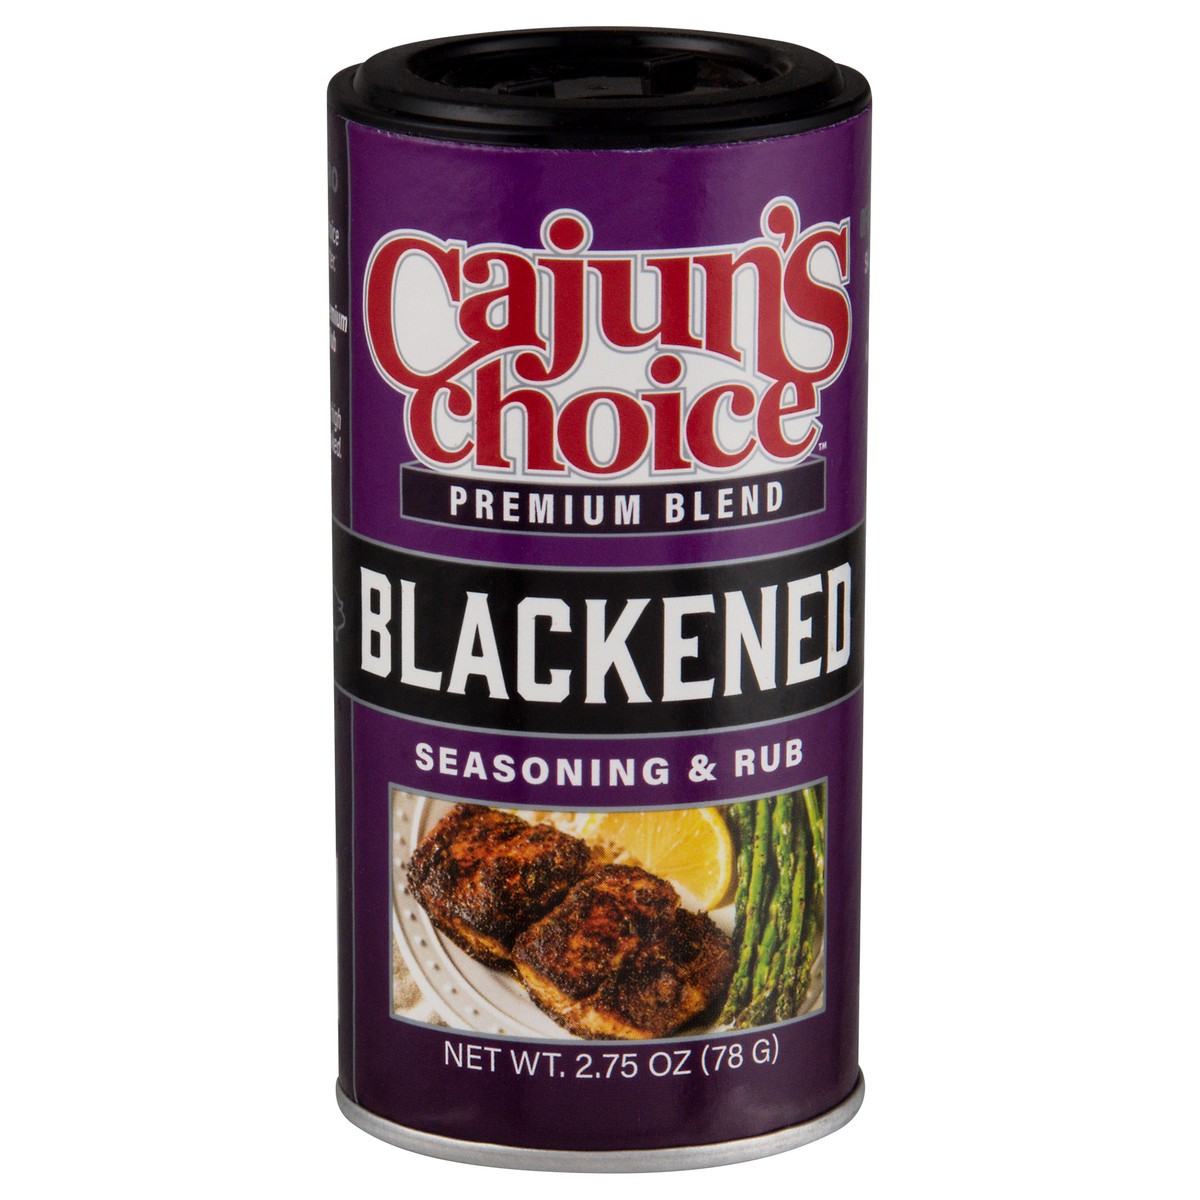 slide 1 of 9, Cajun's Choice Premium Blend Blackened Seasoning & Rub 2.75 oz, 2.75 oz